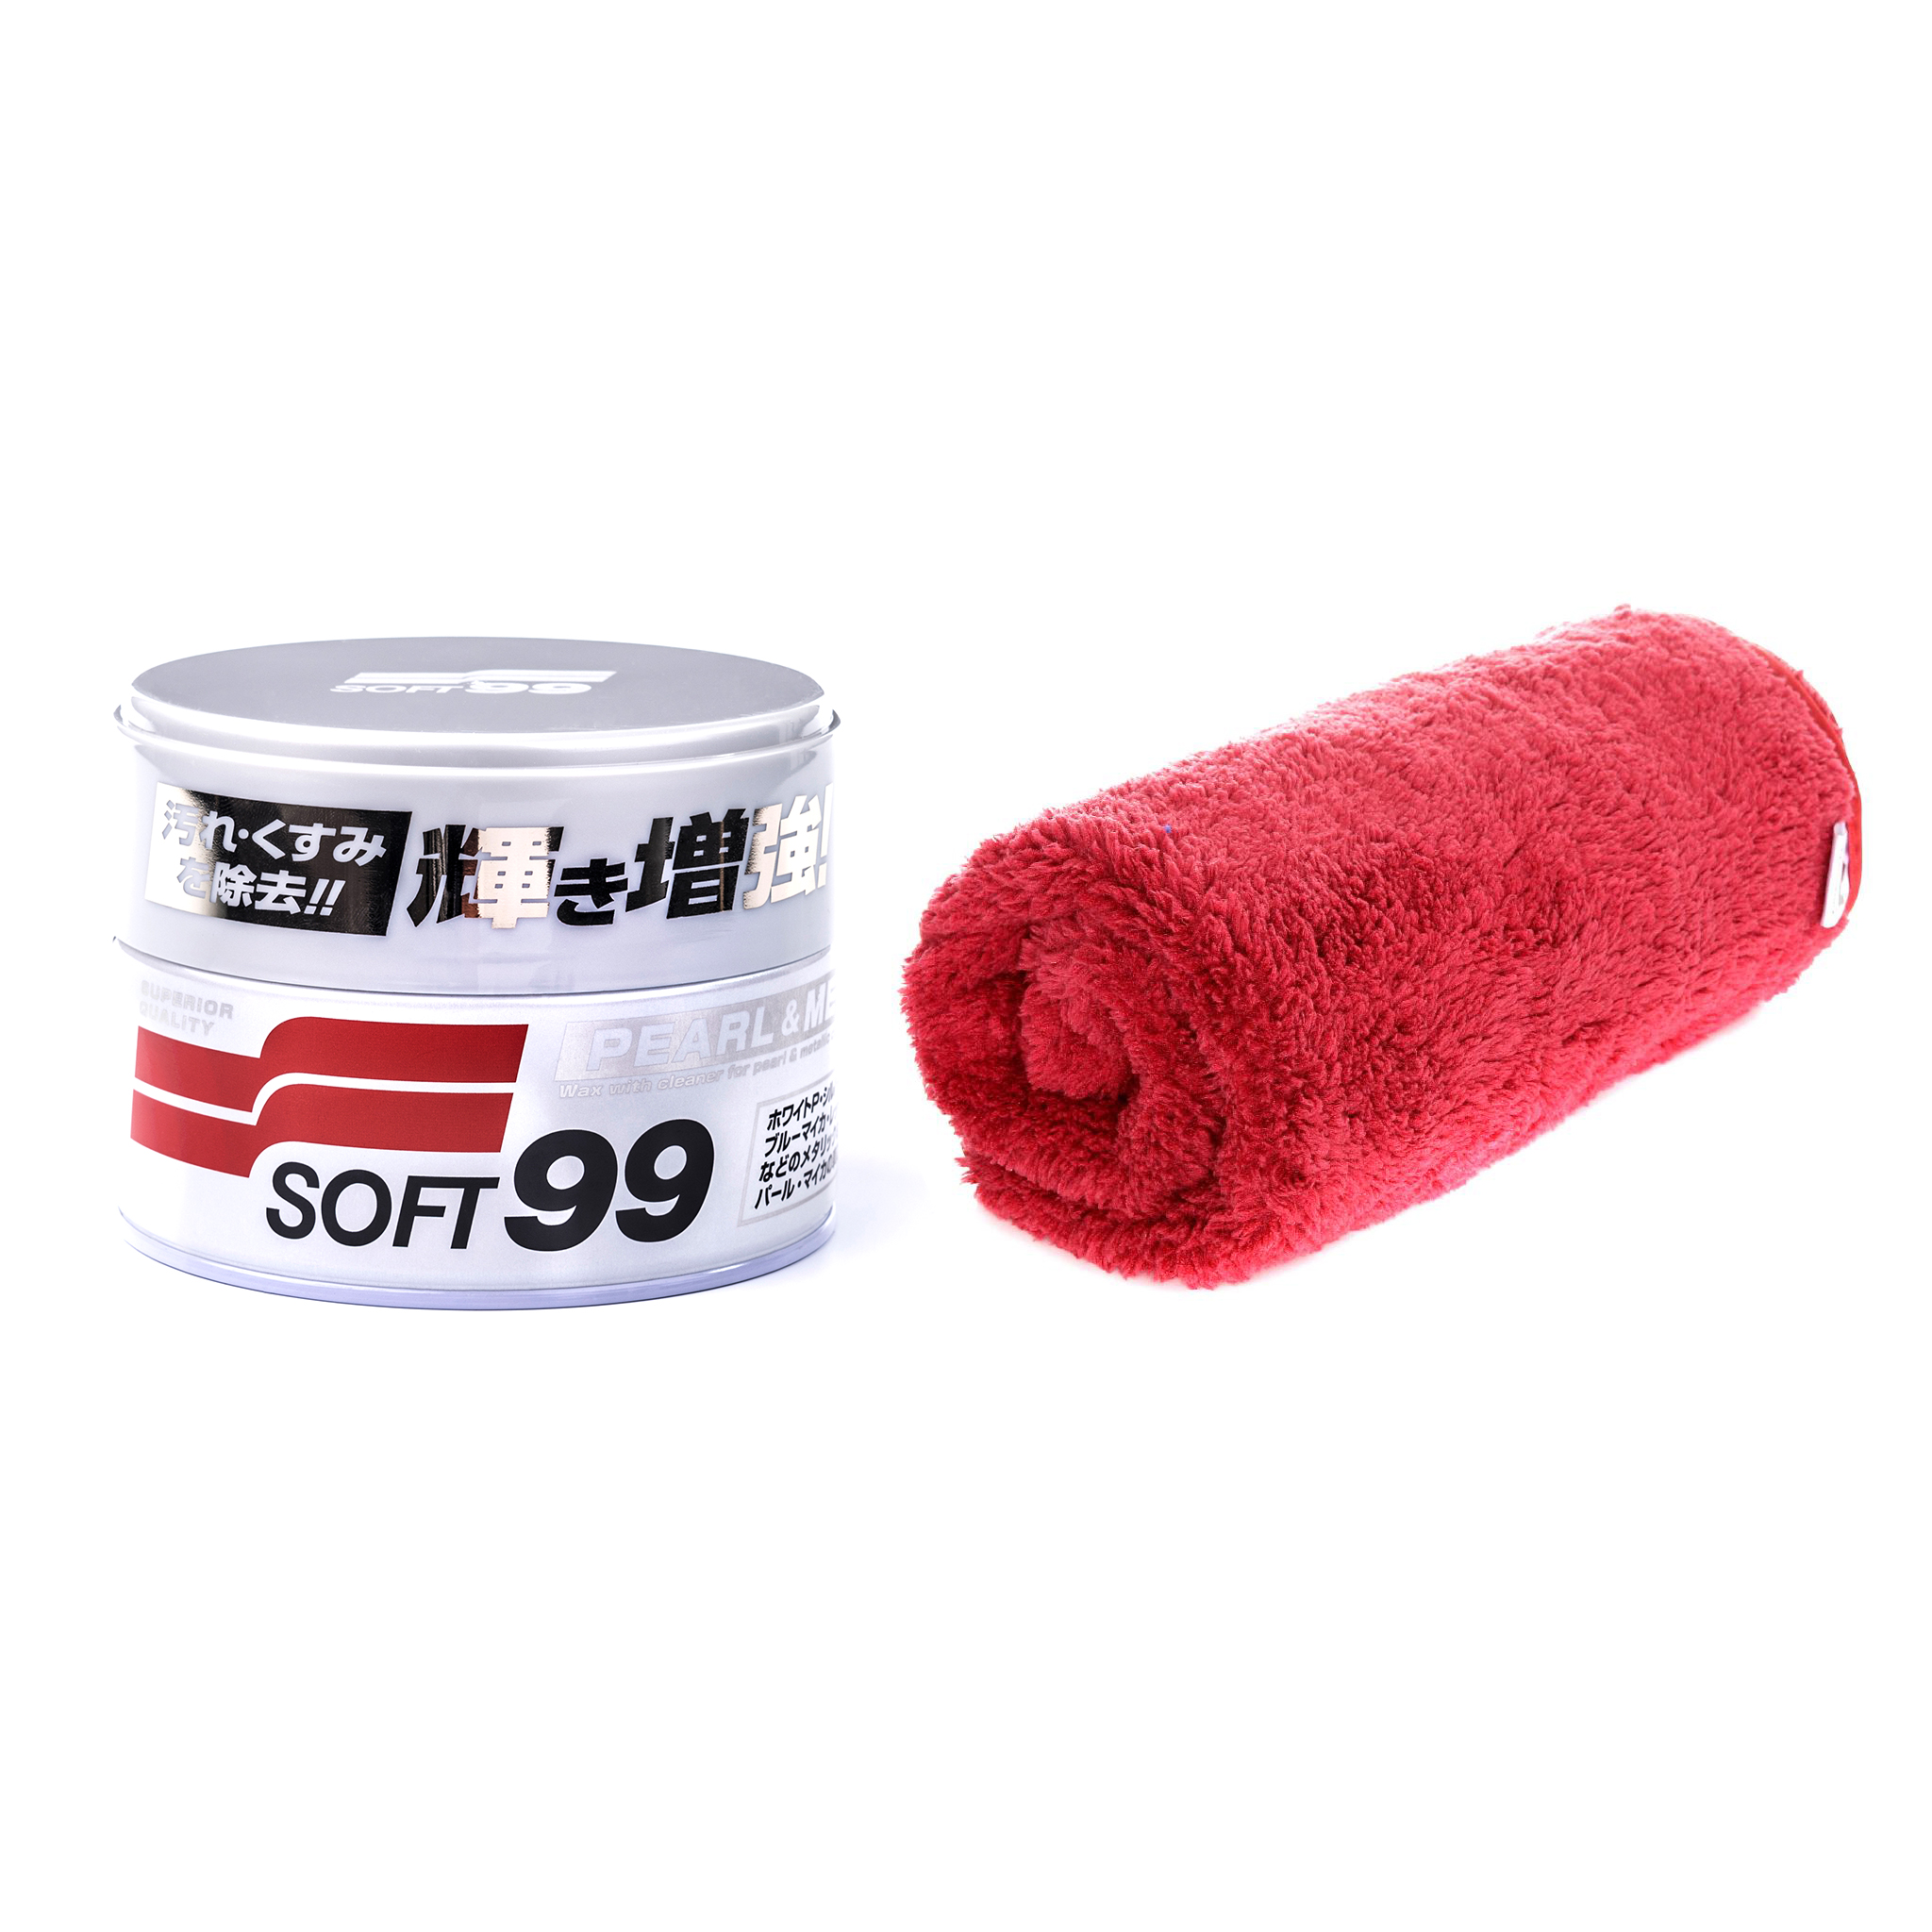 Bilvoks Soft99 Pearl&Metallic Soft Wax, 320 g, Soft99 Pearl&Metallic Soft Wax + KC Red Ruby